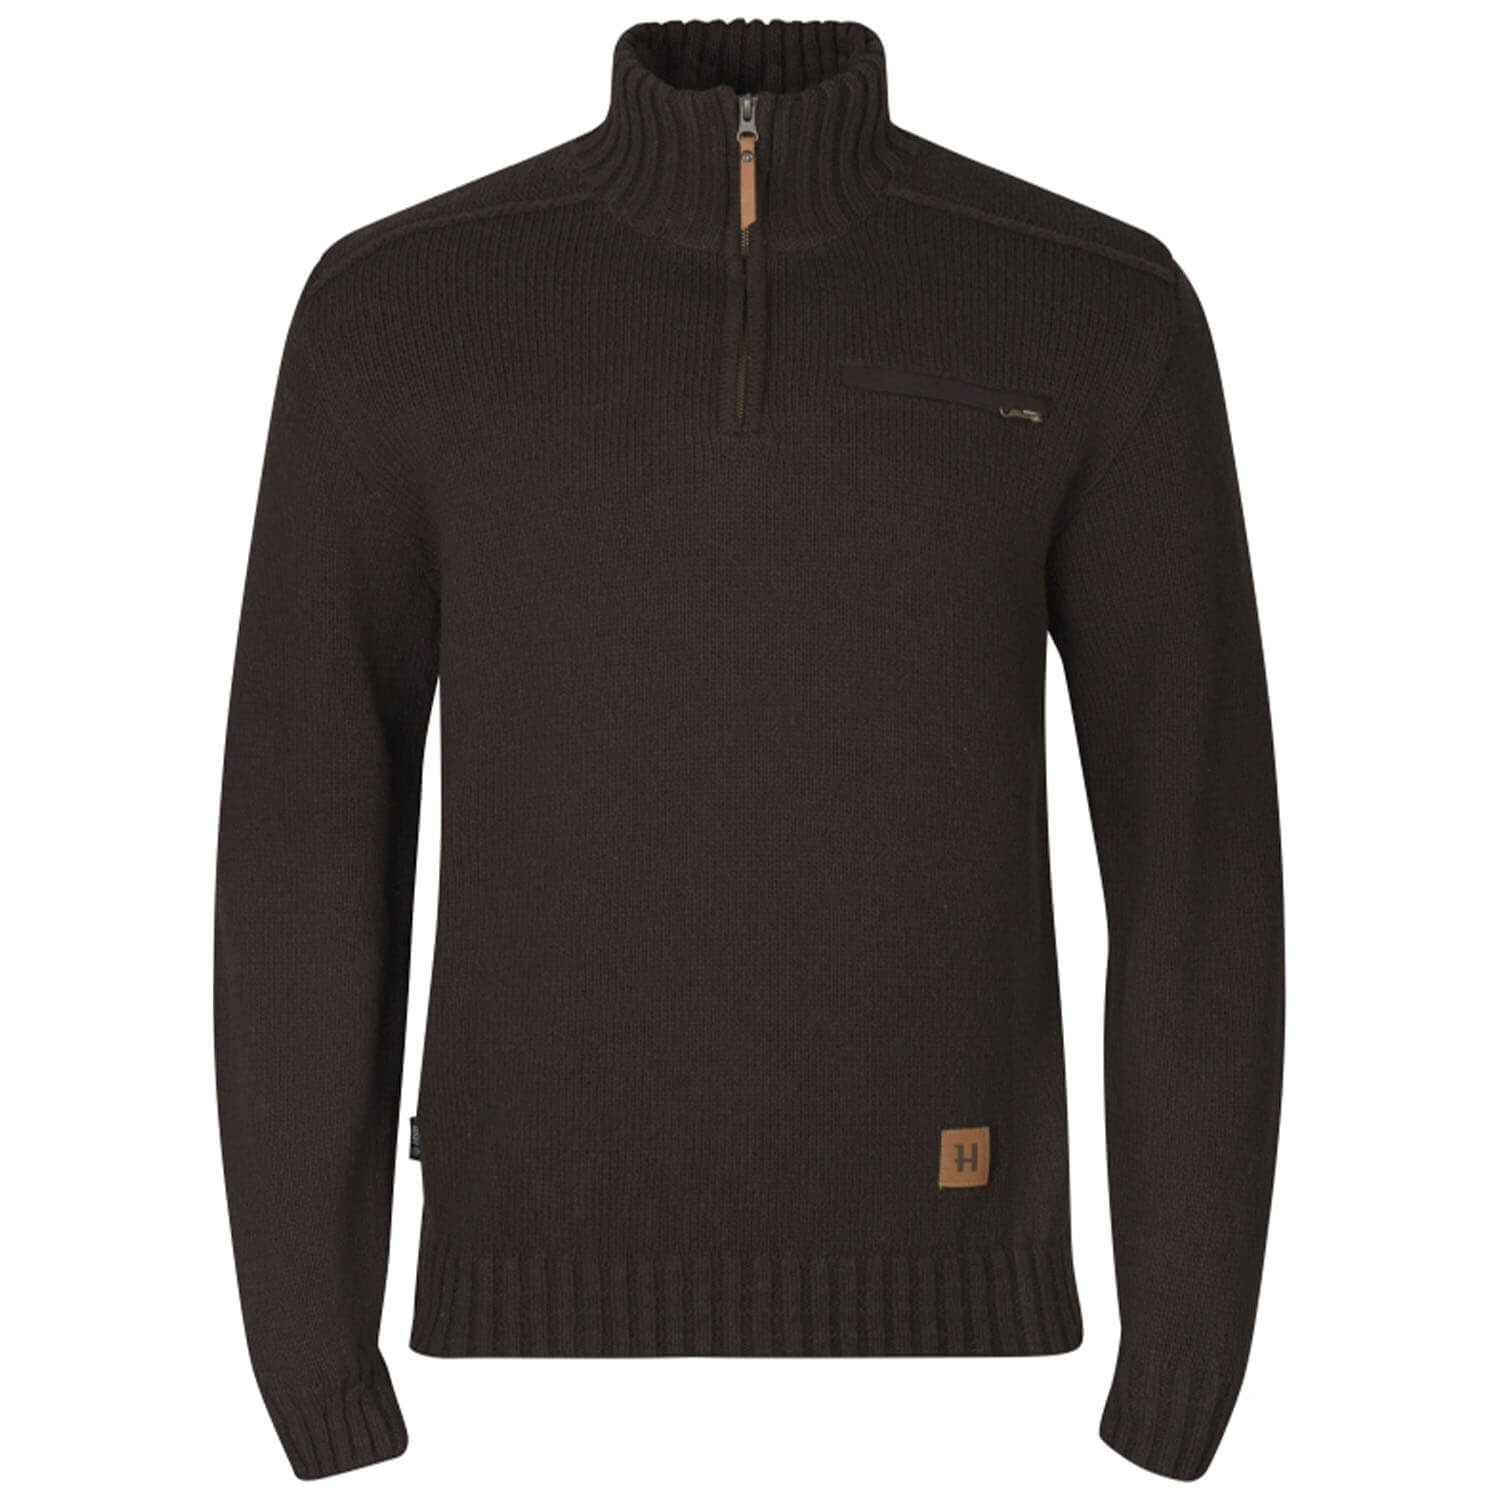 Härkila sweater annaboda 2.0 HSP (demitasse brown) - Sale